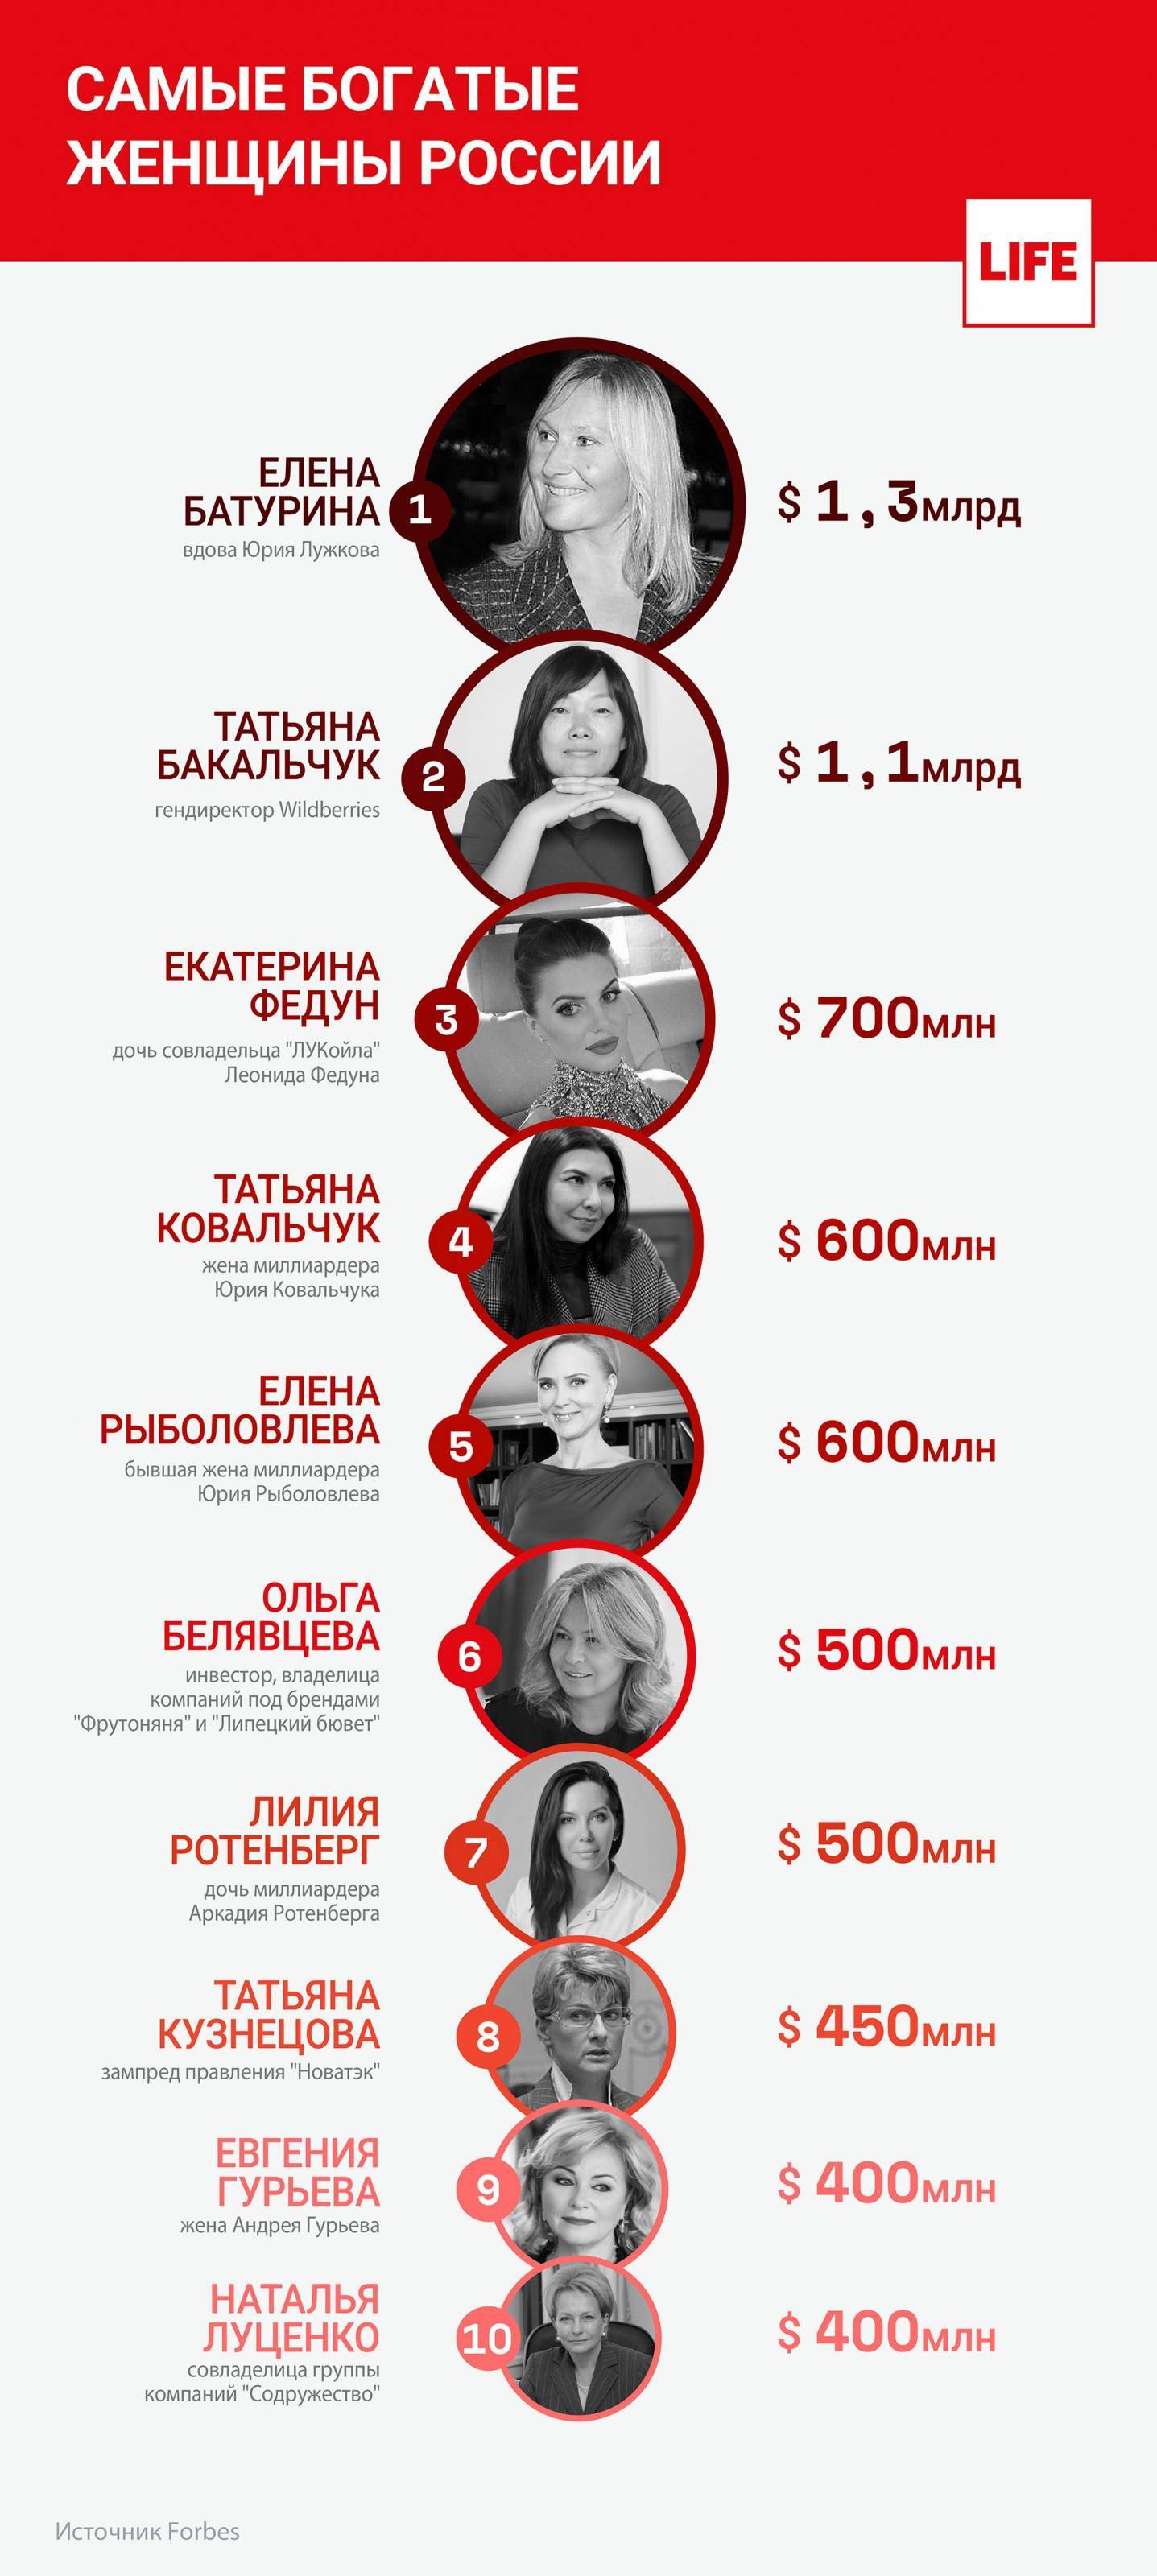 9 самых богатых женщин-блогеров российского интернета по версии forbes